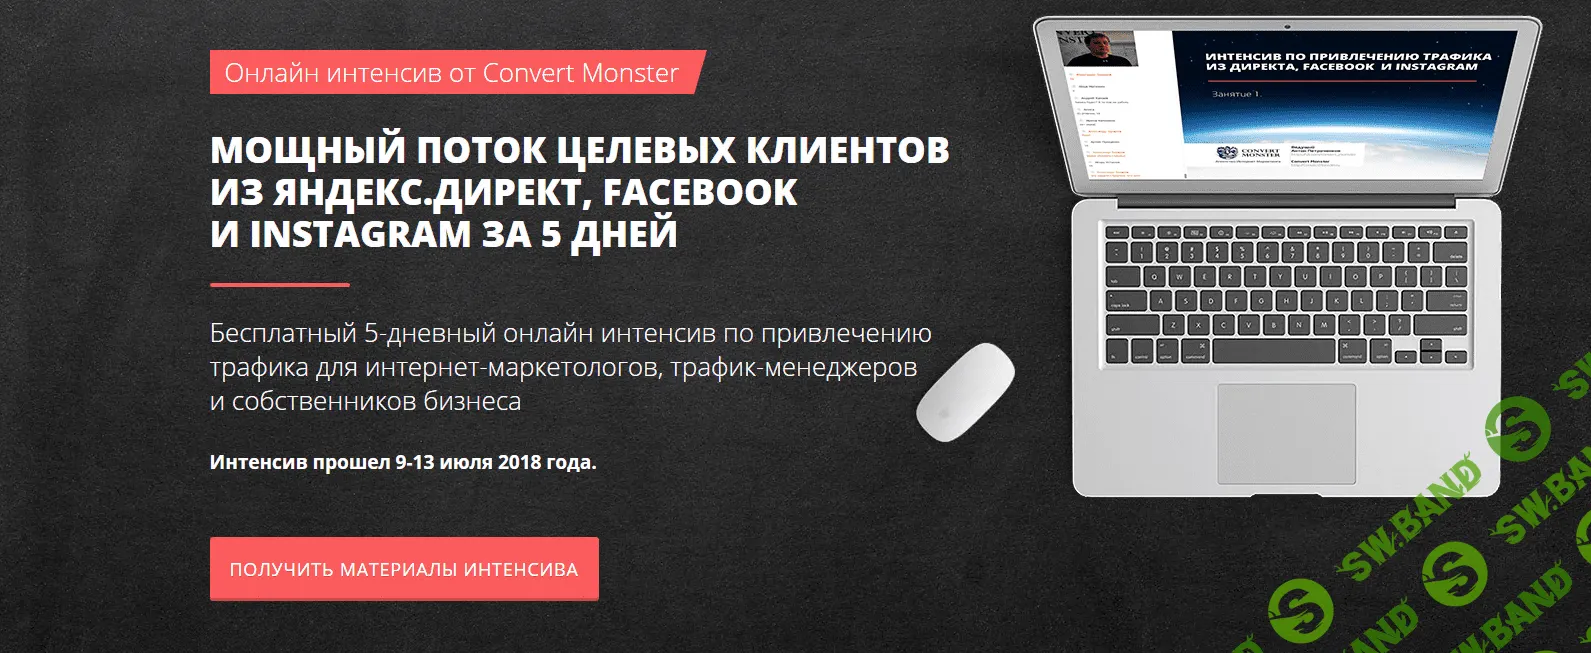 [Convert Monster] Мощный поток целевых клиентов из Яндекс Директ, Facebook  и  Instagram за 5 дней. Онлайн-интенсив (2018)